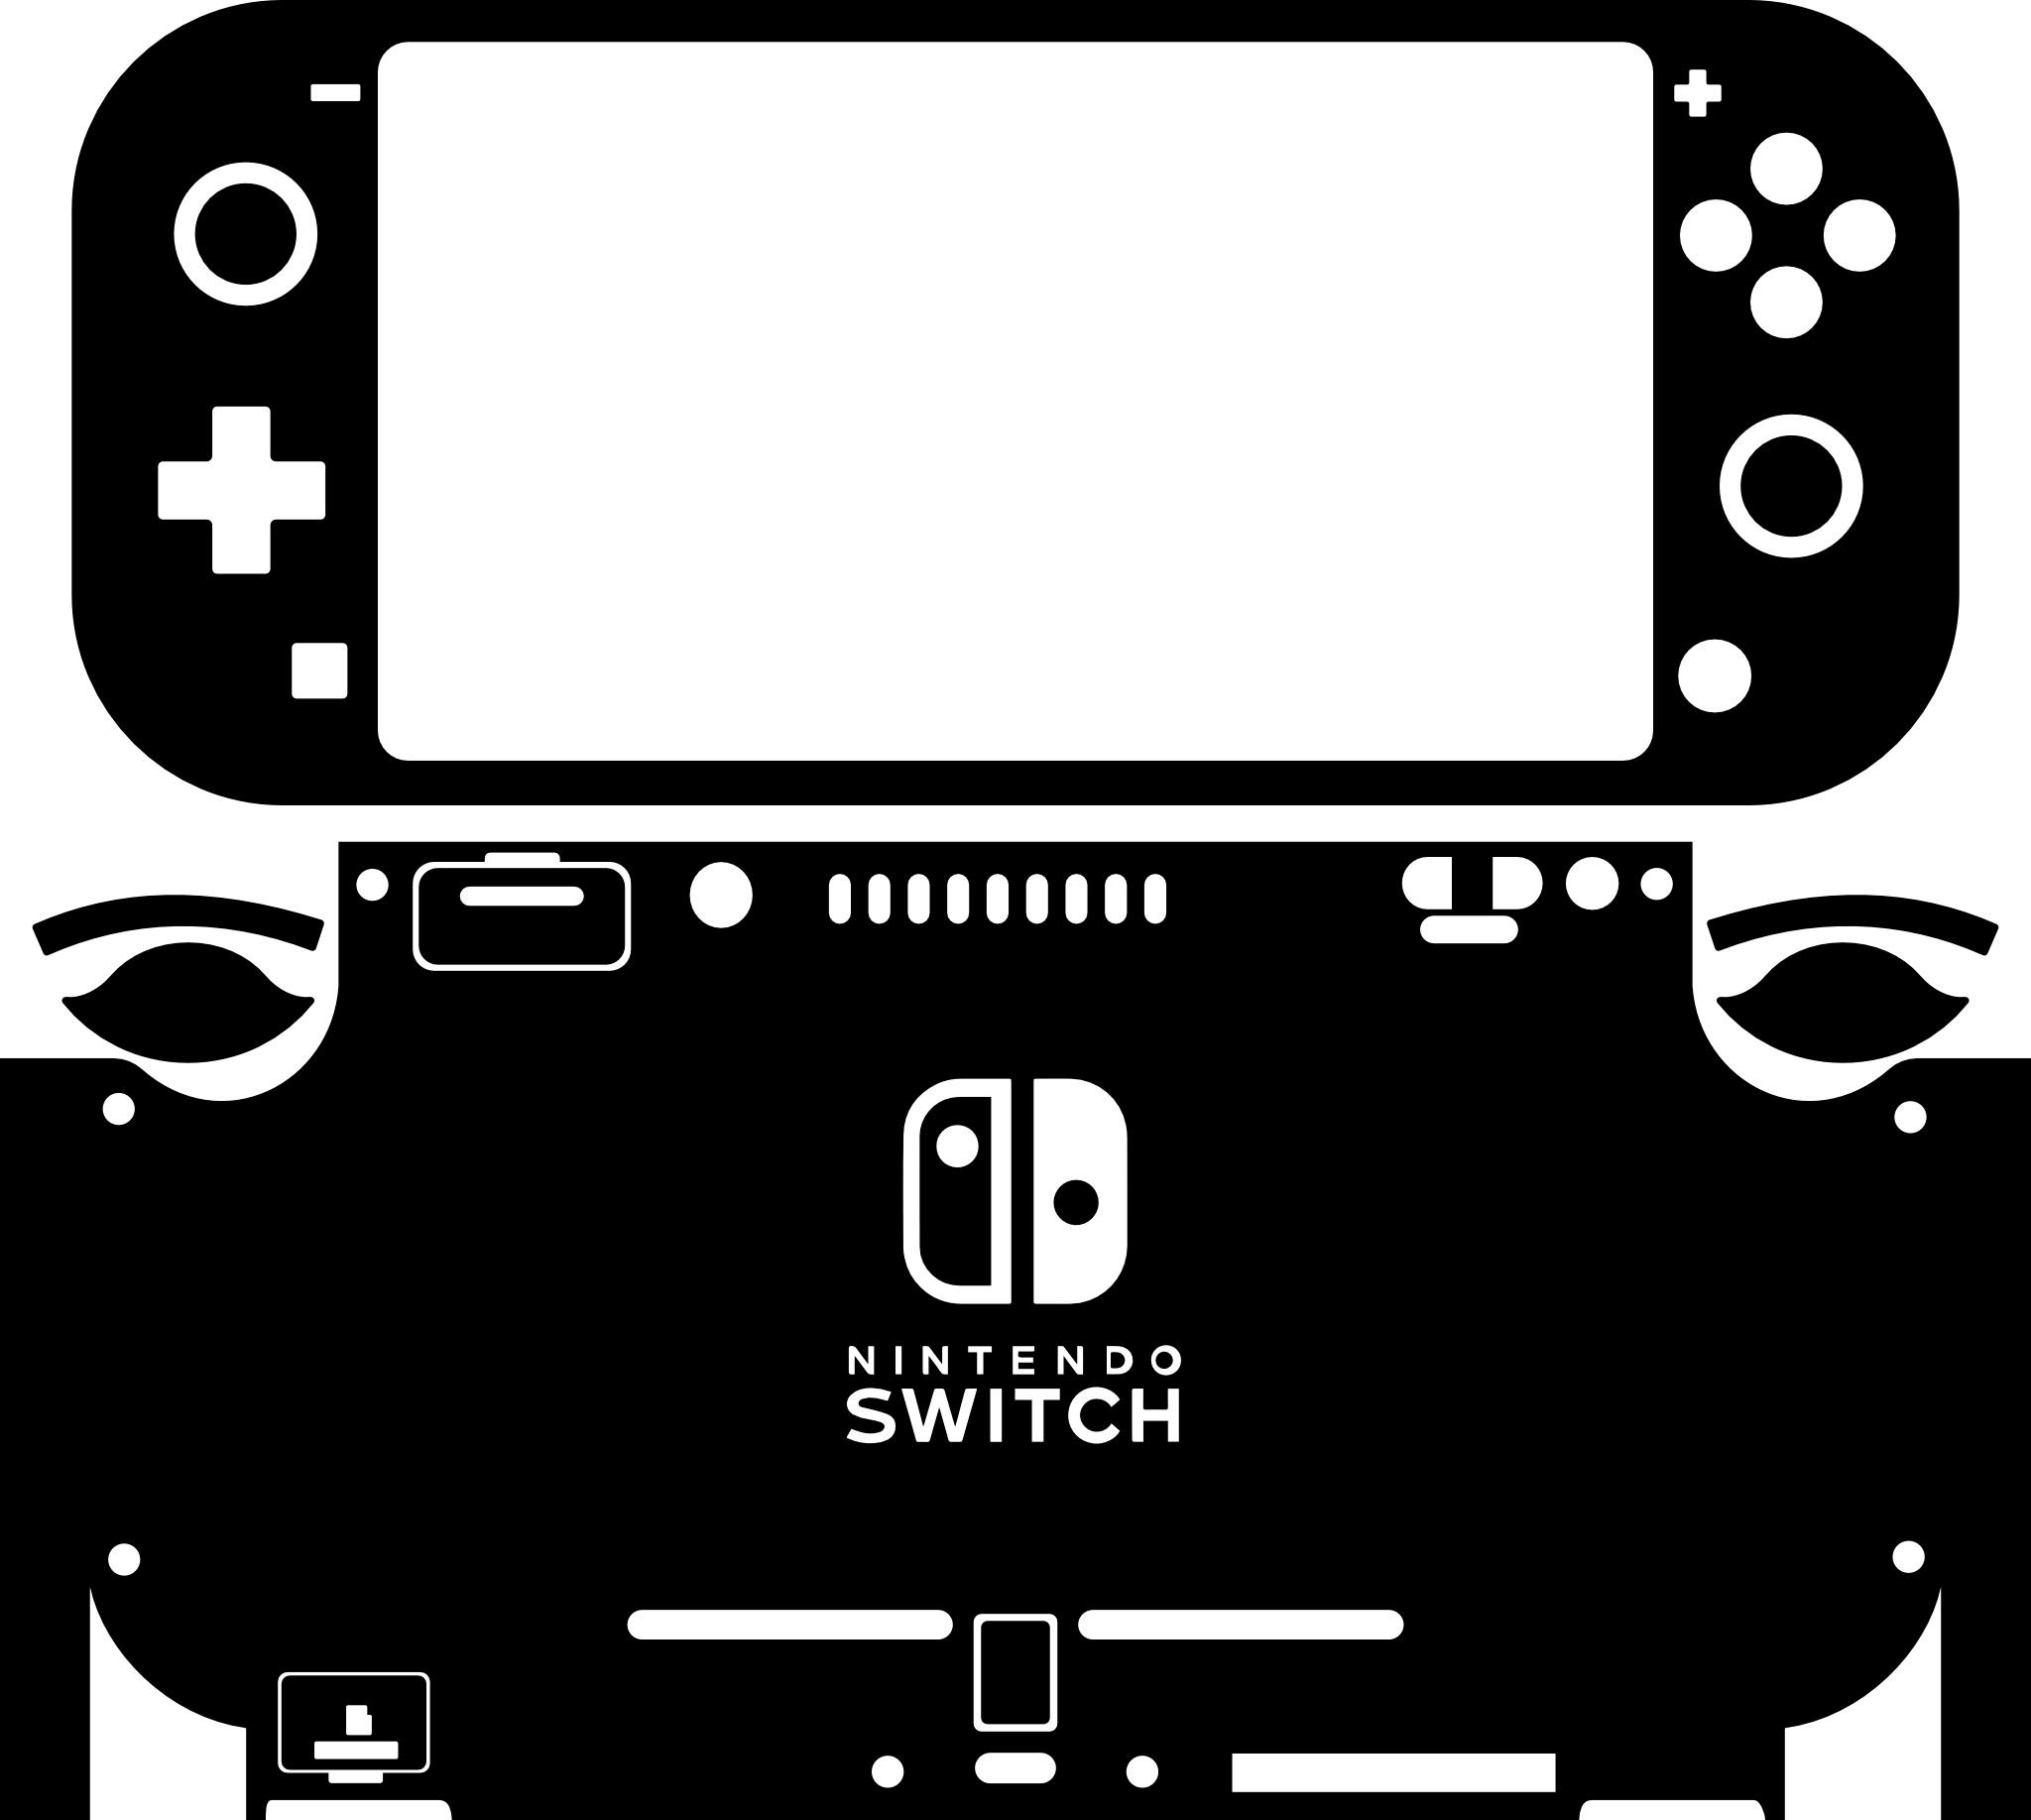 Skin decal dán Nintendo Switch Lite mẫu con mèo đen trên nền hồng (dễ dán, đã cắt sẵn)